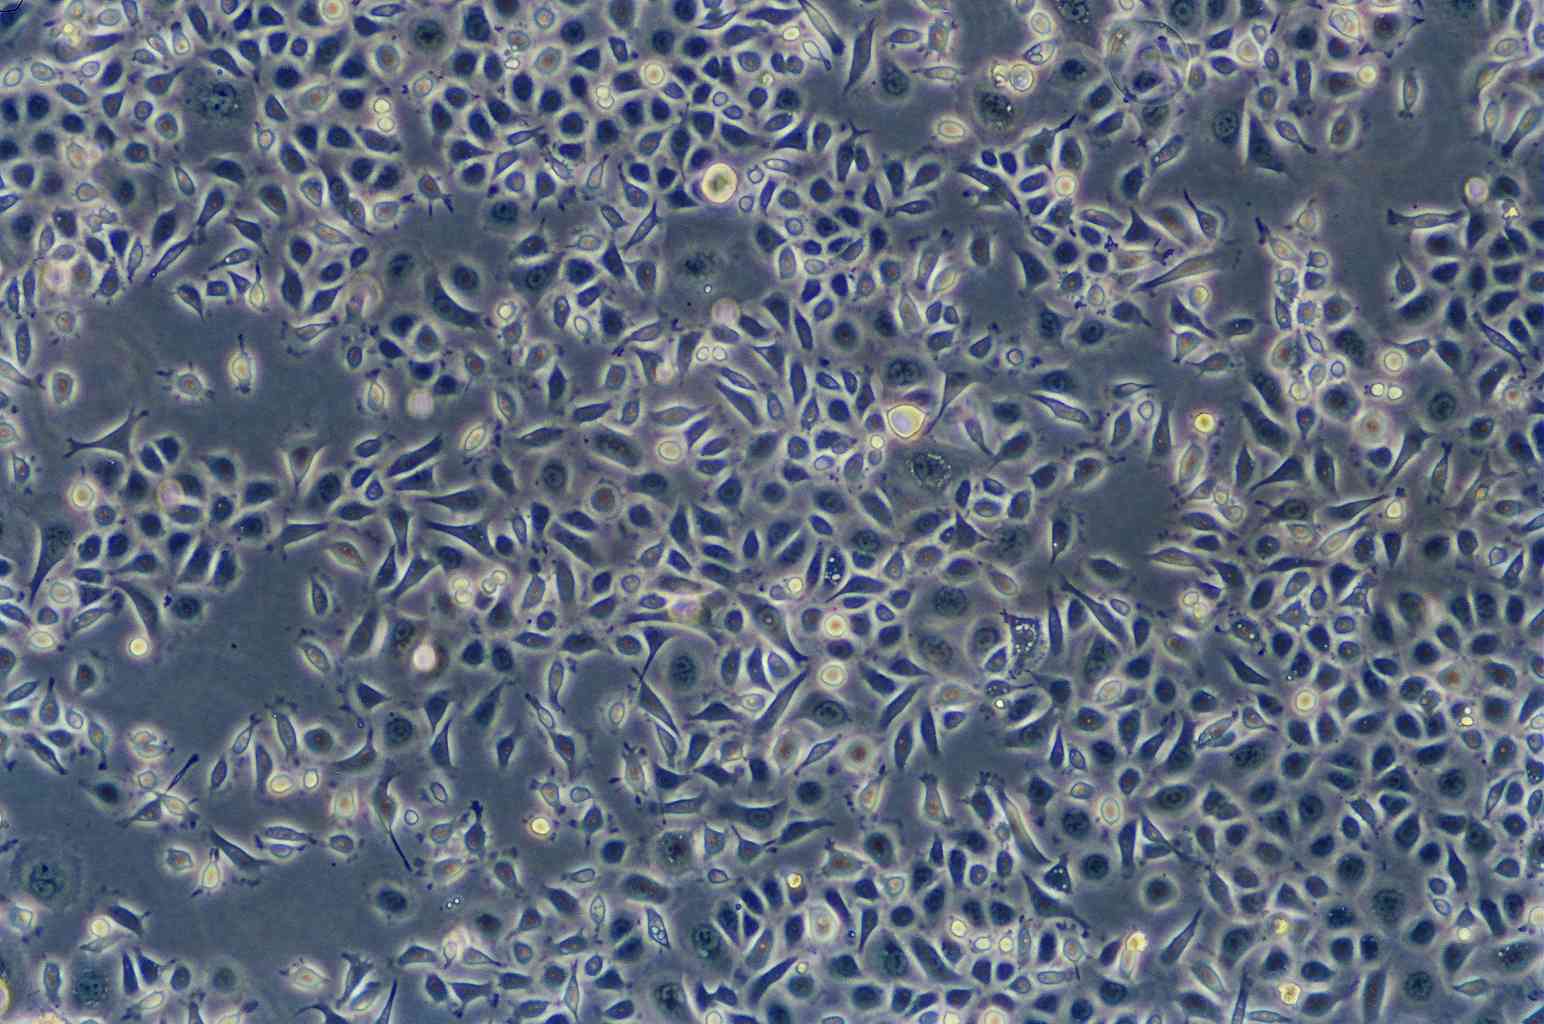 N9 cell line小鼠小胶质细胞系